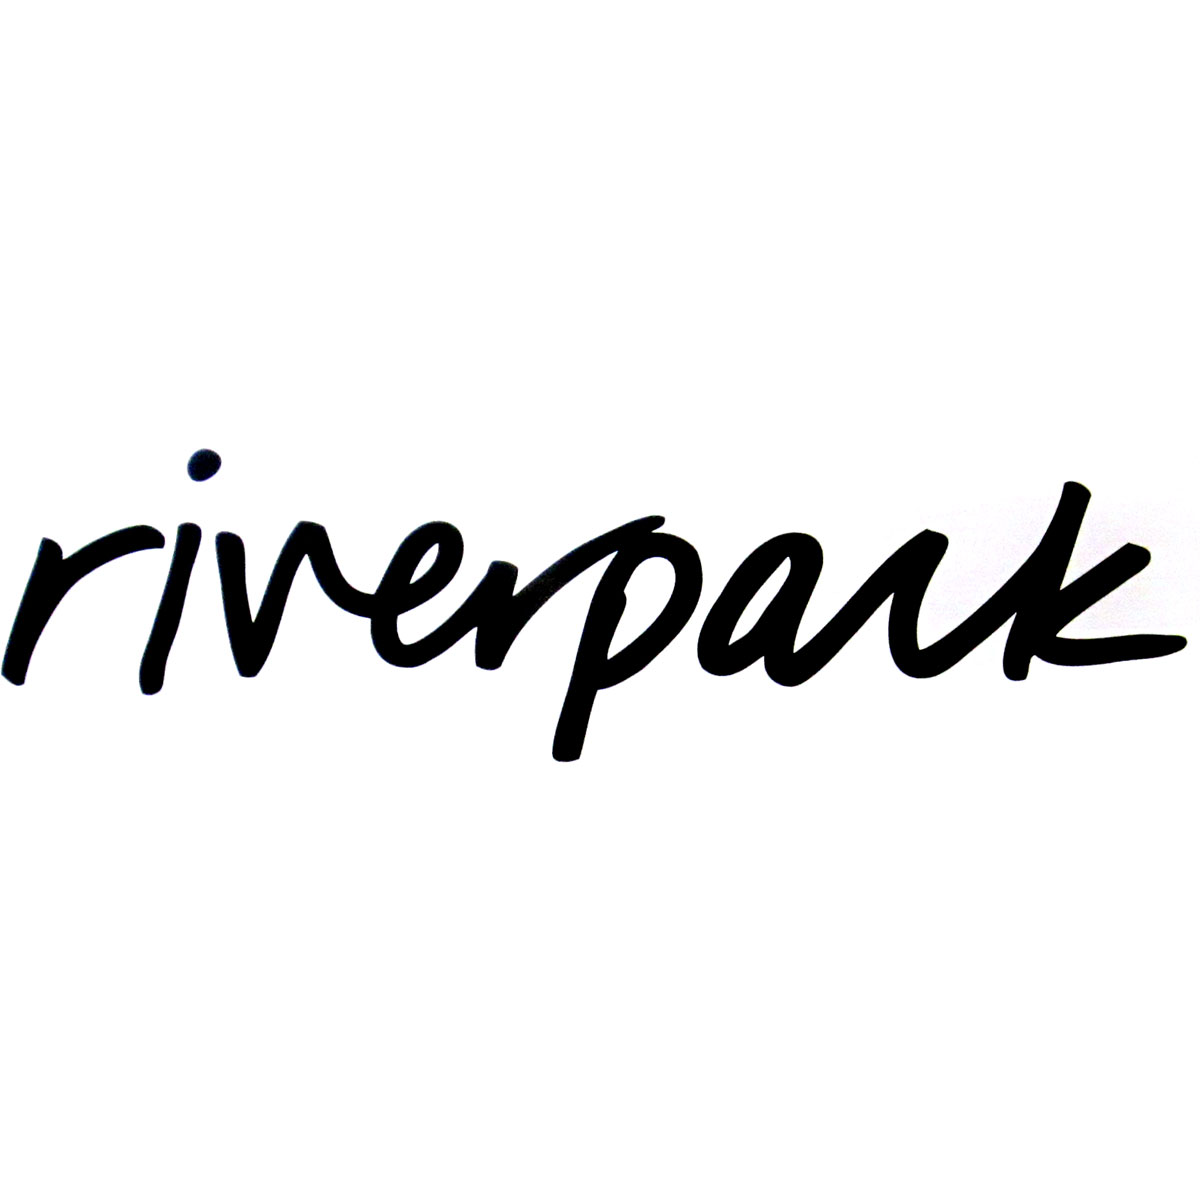 riverpark-logo.jpg